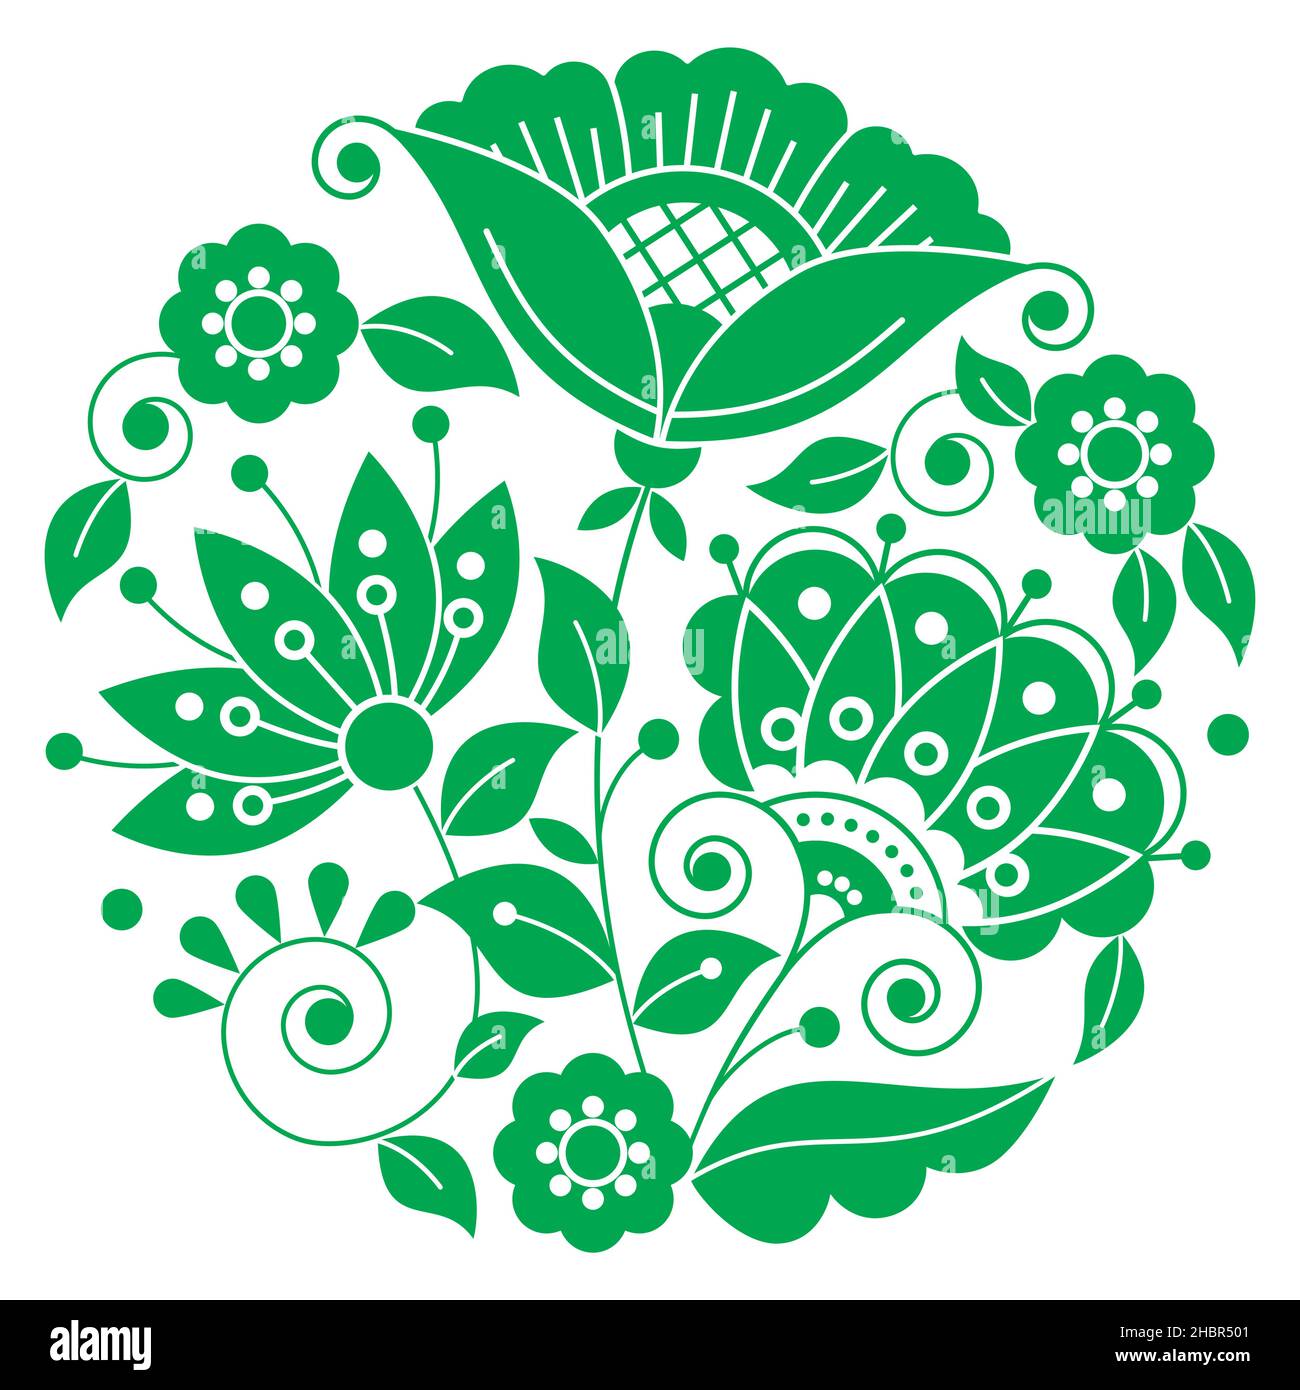 Motif mandala vectoriel d'art populaire suédois avec fleurs vertes, feuilles et tourbillons inspirés de la broderie traditionnelle scandinave Illustration de Vecteur